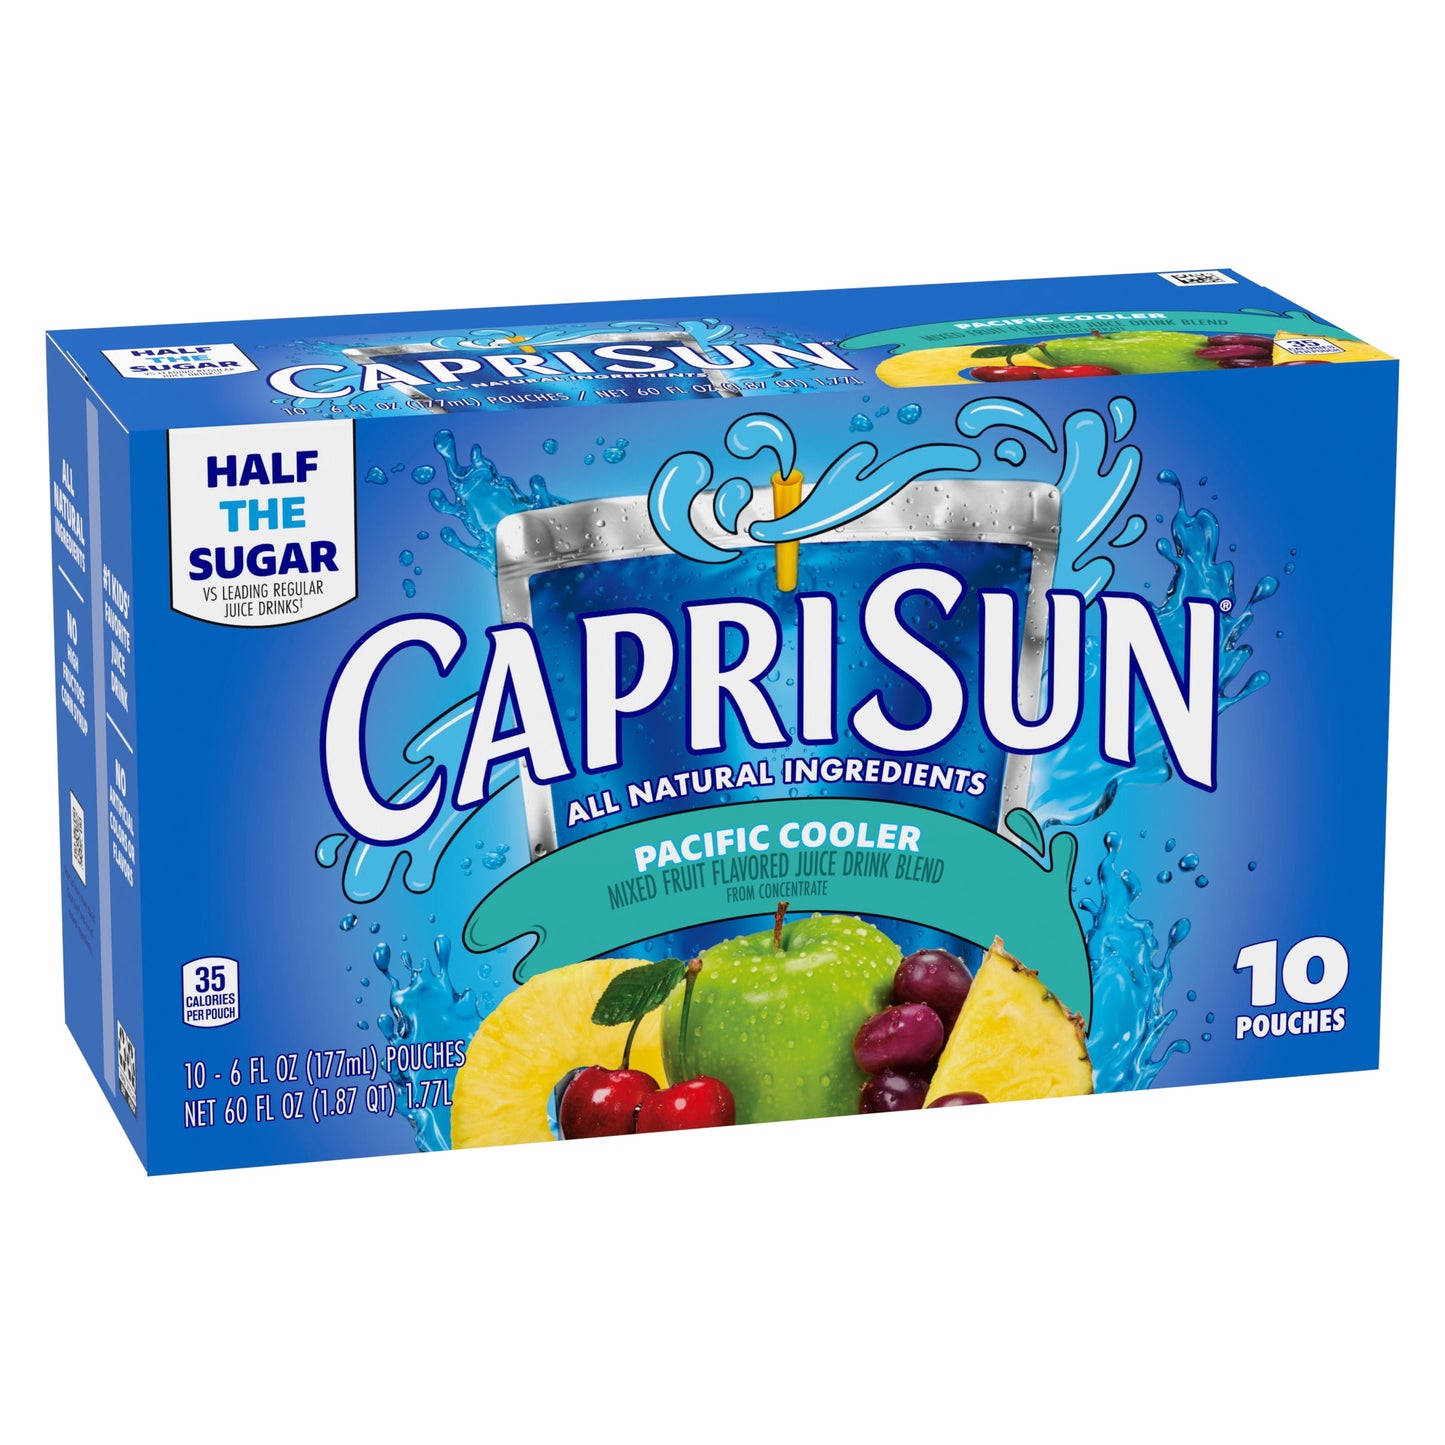 Capri Sun Pacific Cooler Mixed Fruit Juice Box Pouches, 10 ct Box, 6 fl oz Pouches